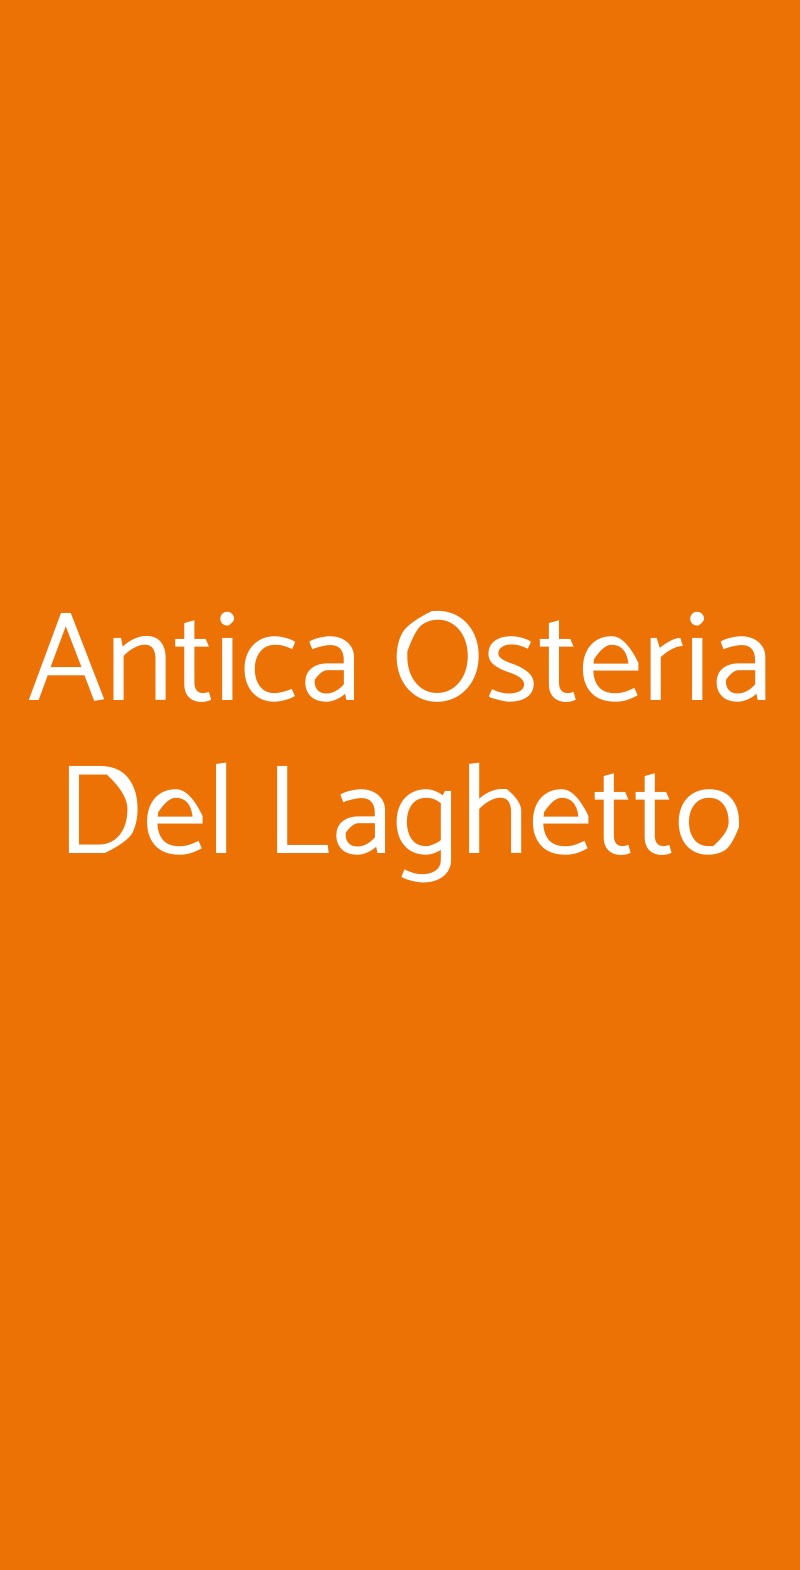 Antica Osteria Del Laghetto Milano menù 1 pagina